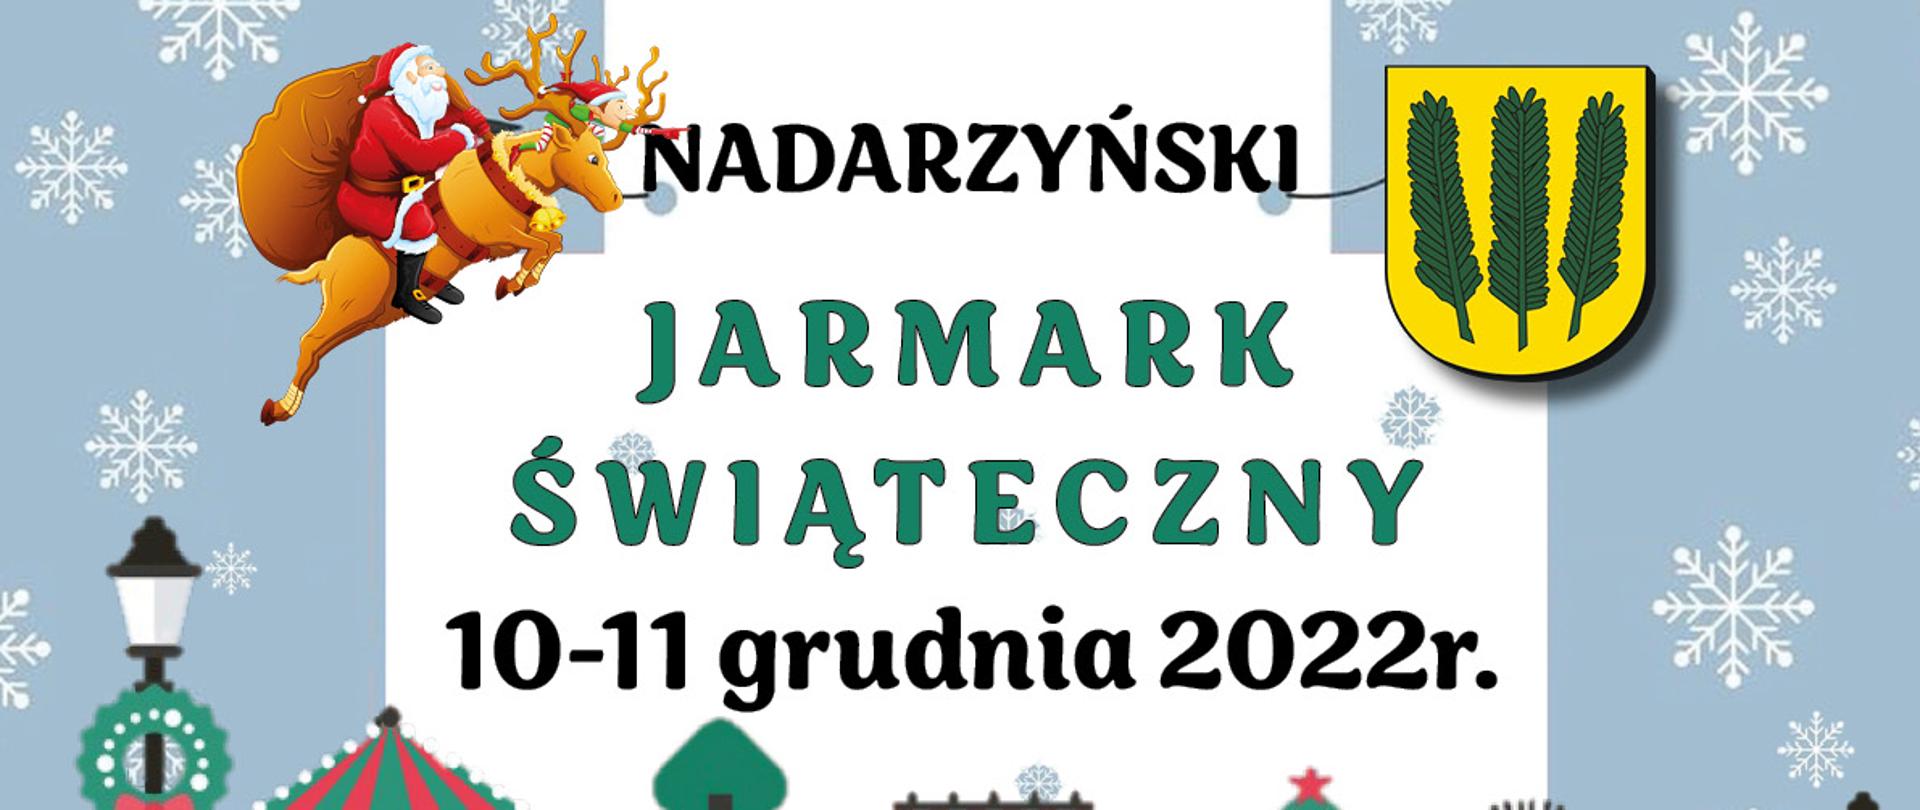 Jarmark Nadarzyn - plakat 